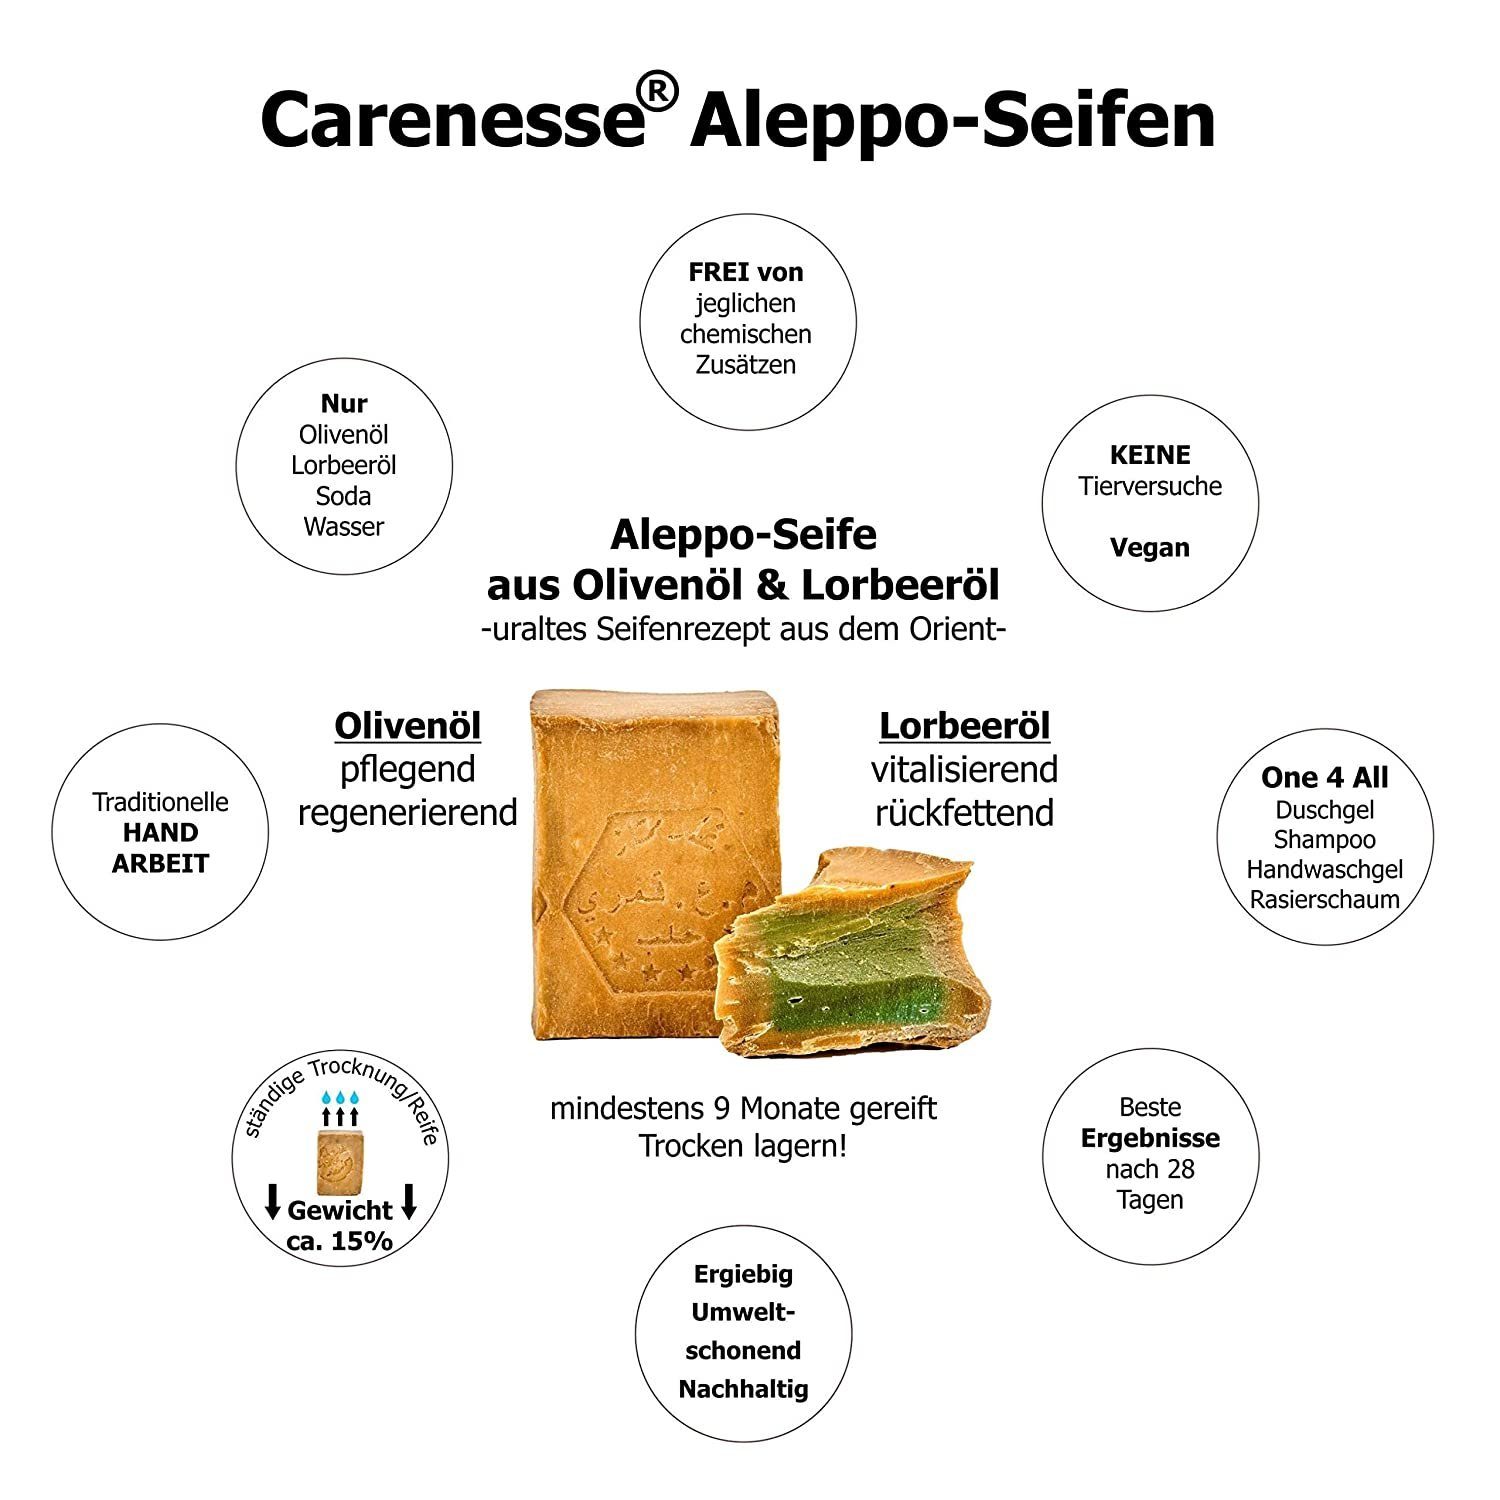 Lorbeerölseife, Original Aleppo-Seife, x Haarseife Carenesse 15% Olivenölseife, Olivenöl, Aleppo Seife g, Seifen-Set & 200 Lorbeeröl 5 Alepposeife, 85%